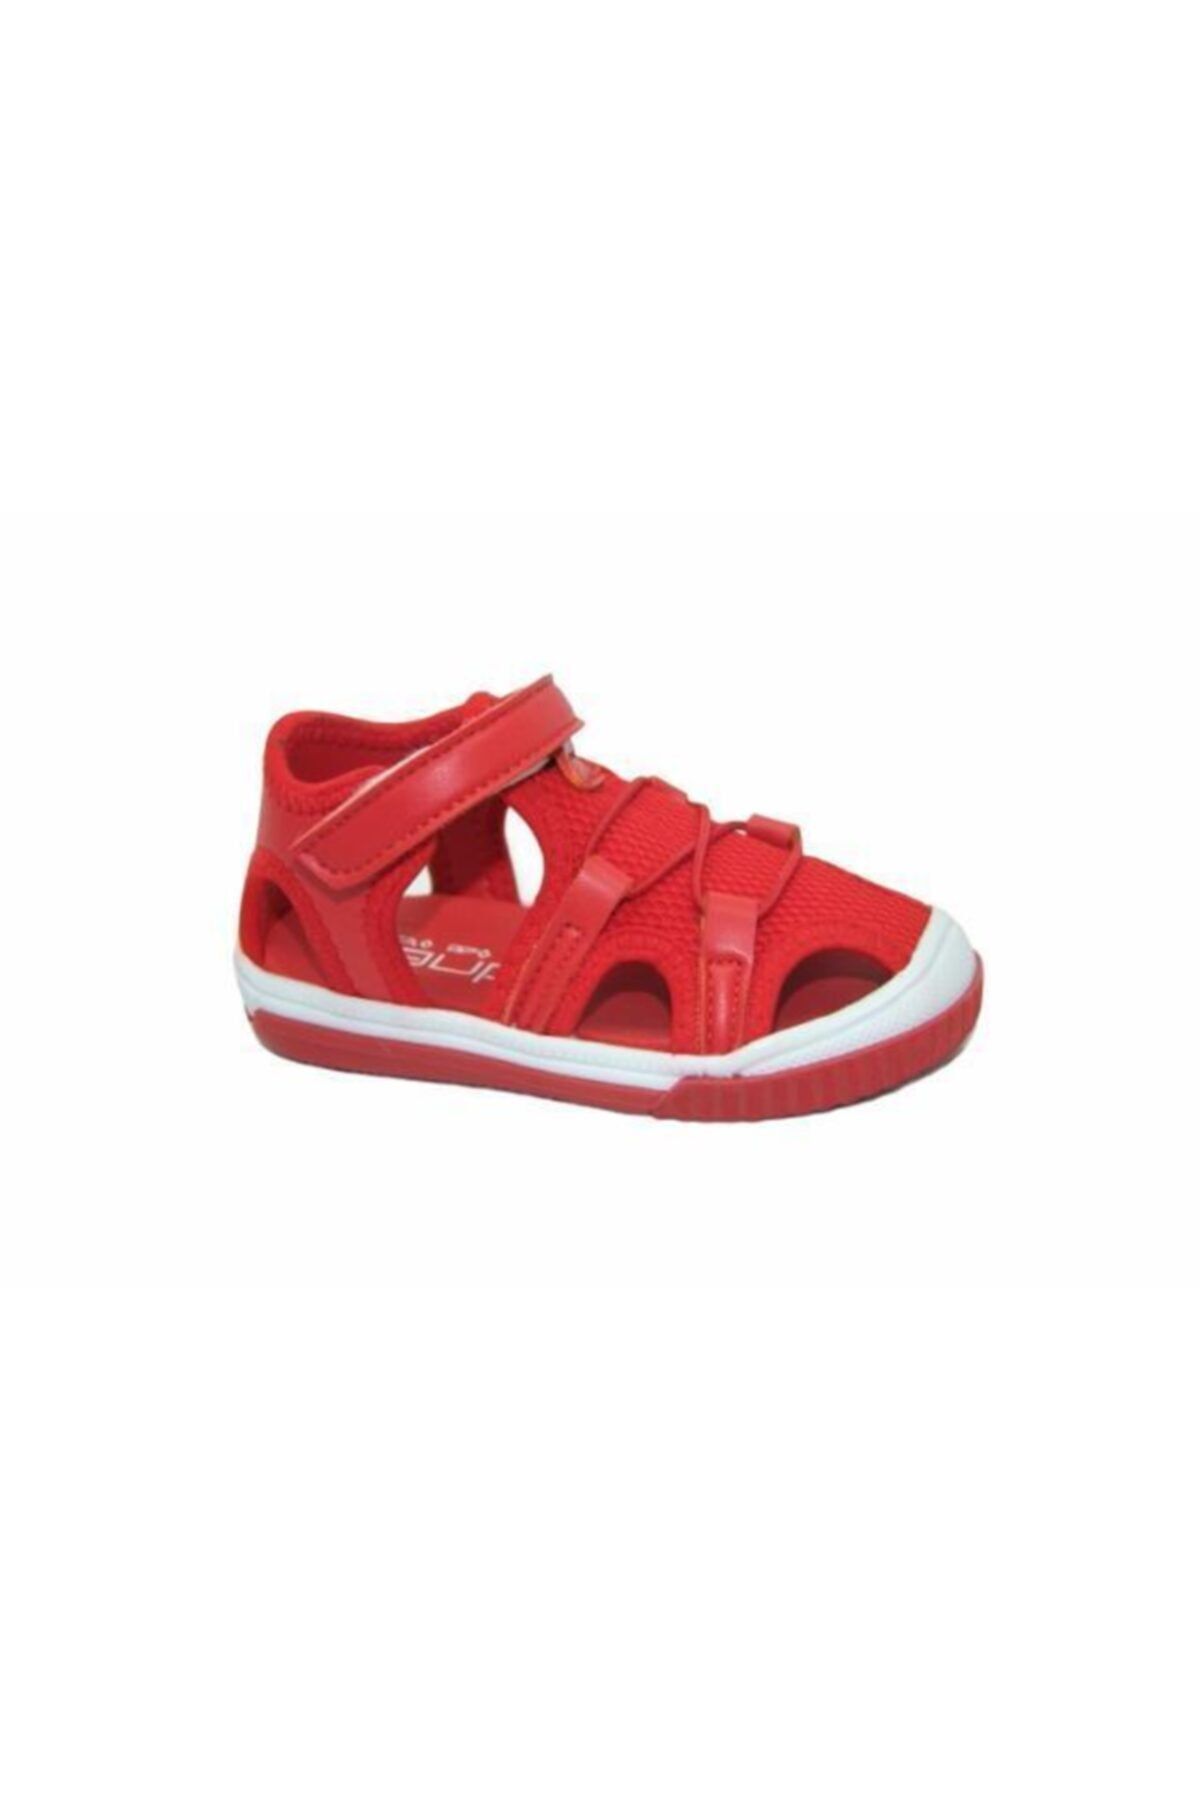 Sanbe 501 N 6601 21-25 Suni Deri Sandalet Kırmızı